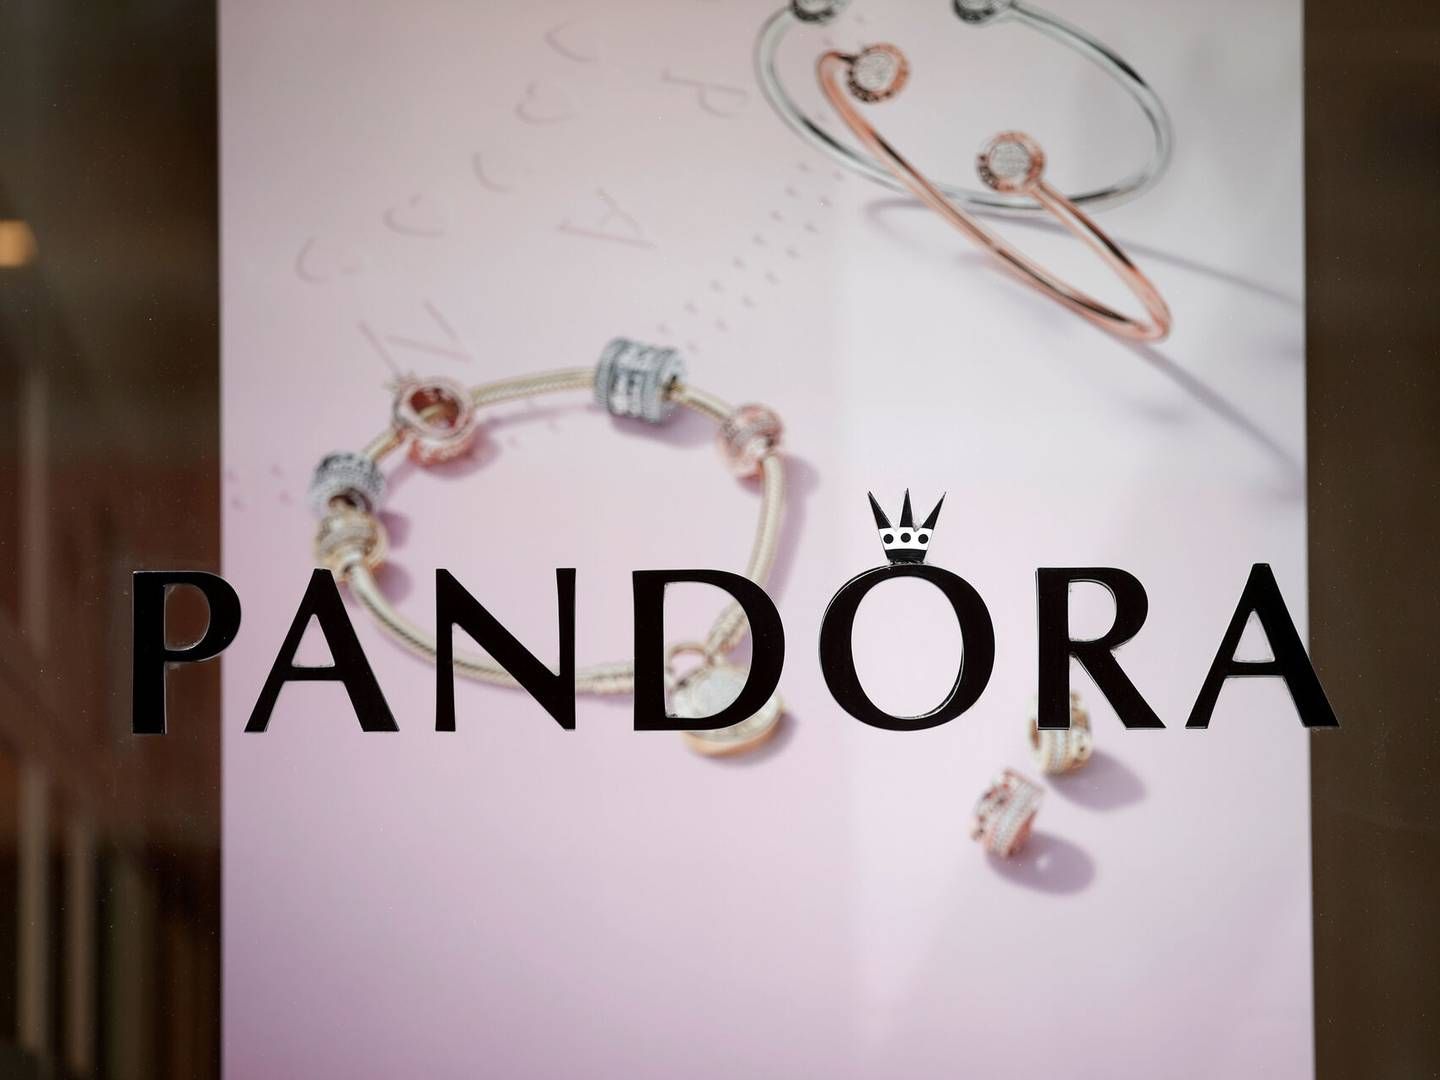 Pandora opdaterede i efteråret 2023 vækststrategien under navnet Phoenix. Den har fokus på at øge investeringerne til branding samt netop flere butikker i det nye koncept samt et udvidet sortiment.